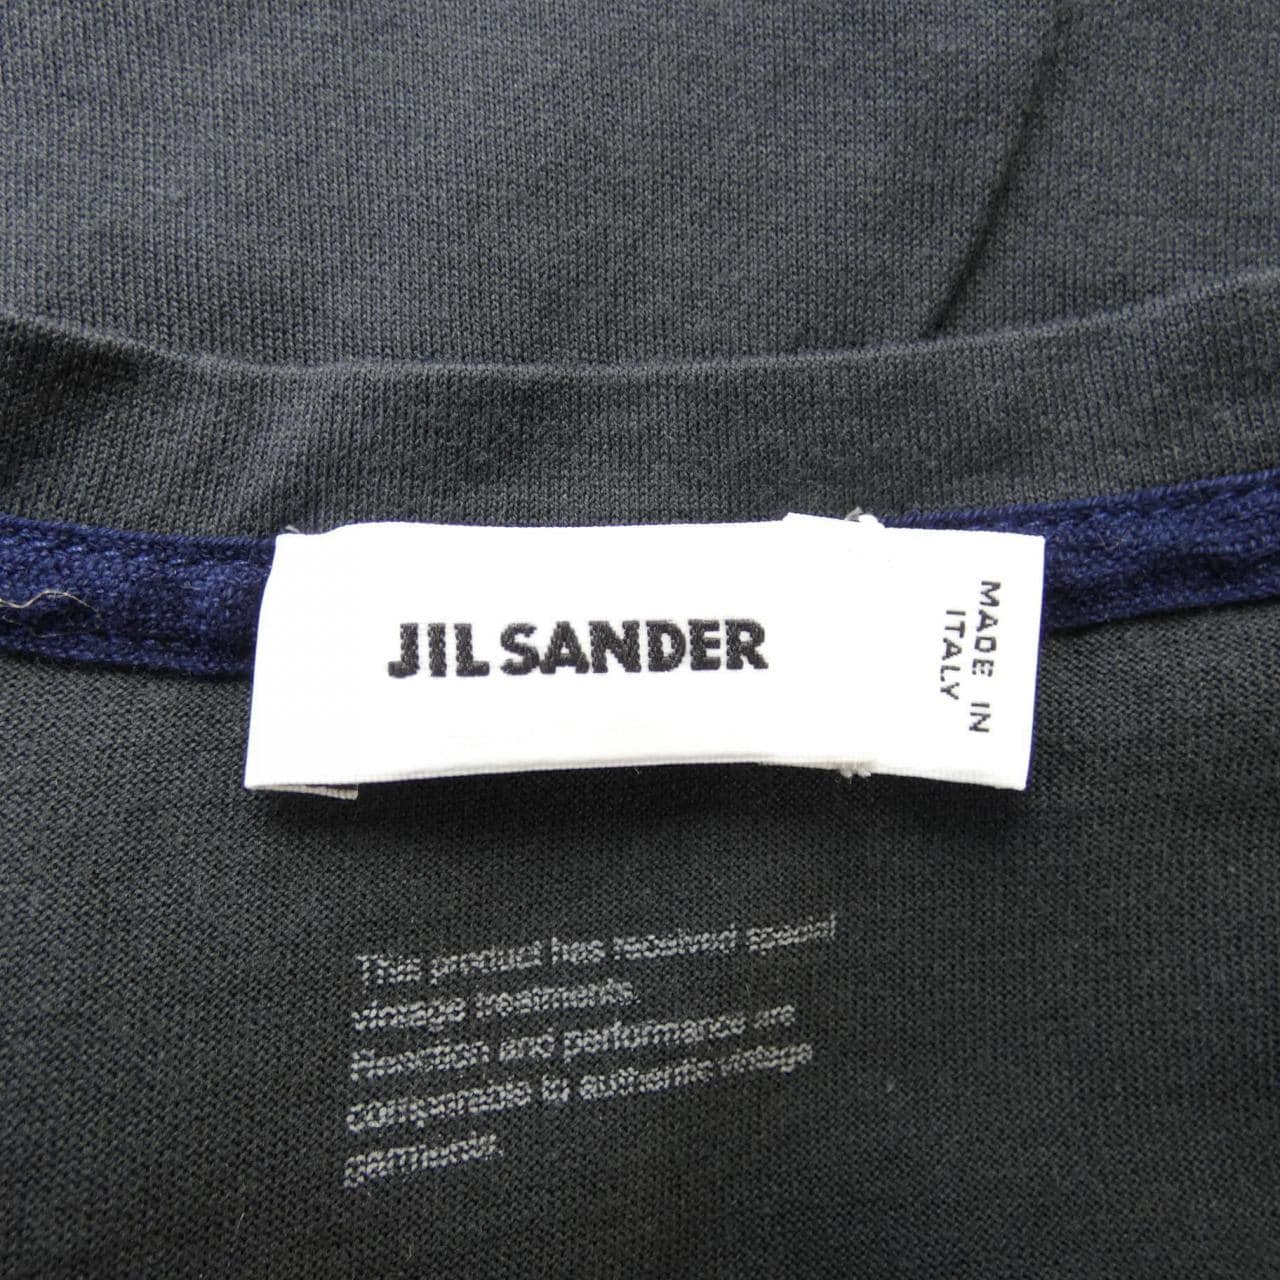 JIL SANDER Jil Sander T-shirt